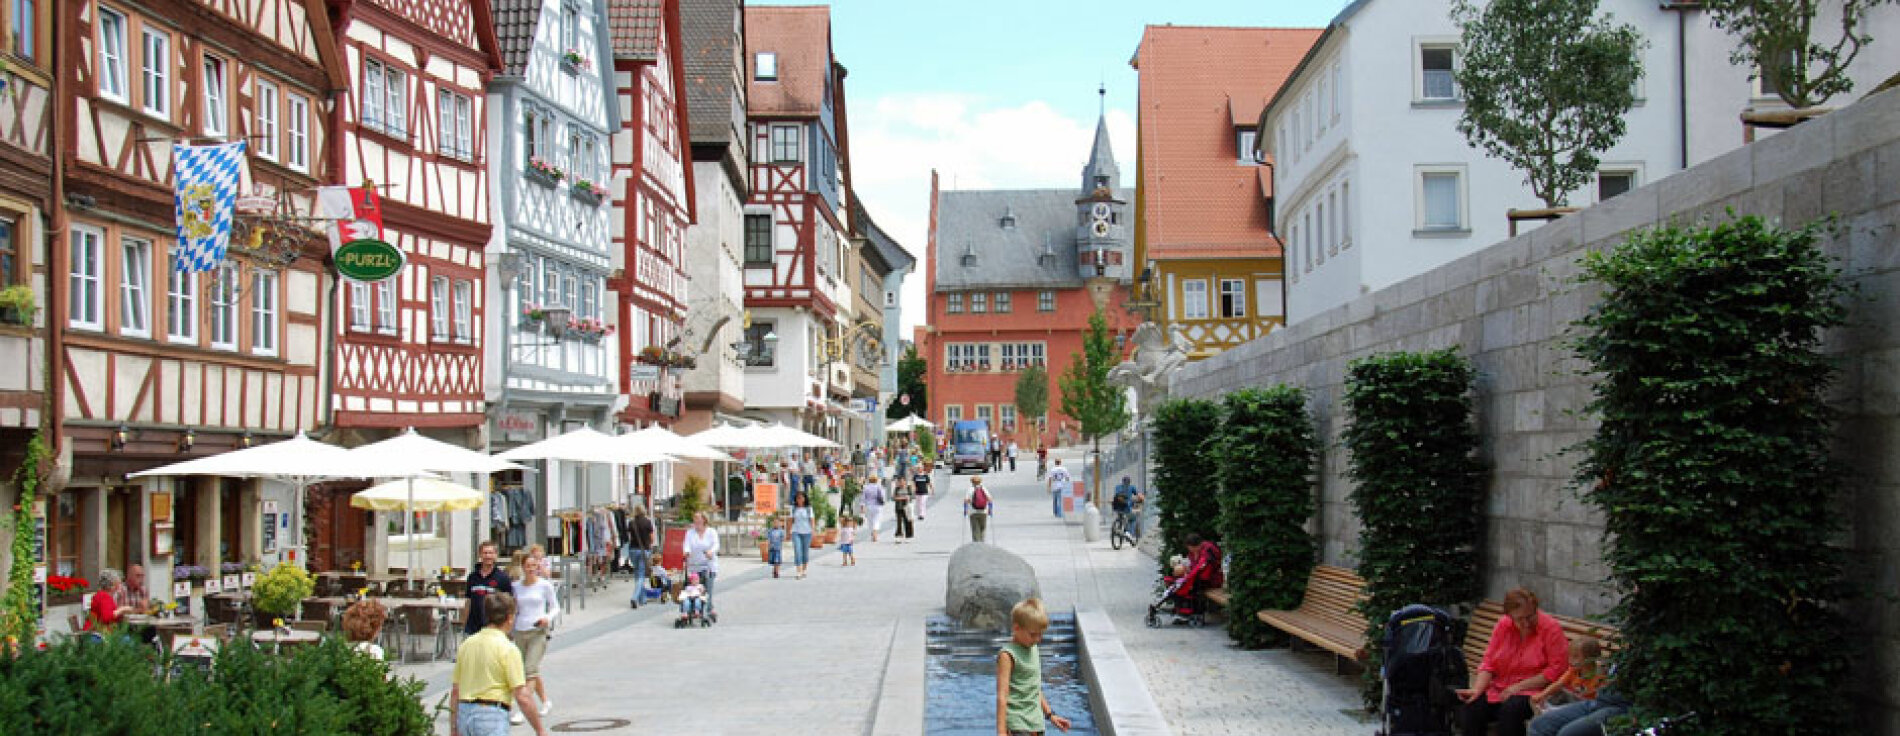 Blick in Altstadt